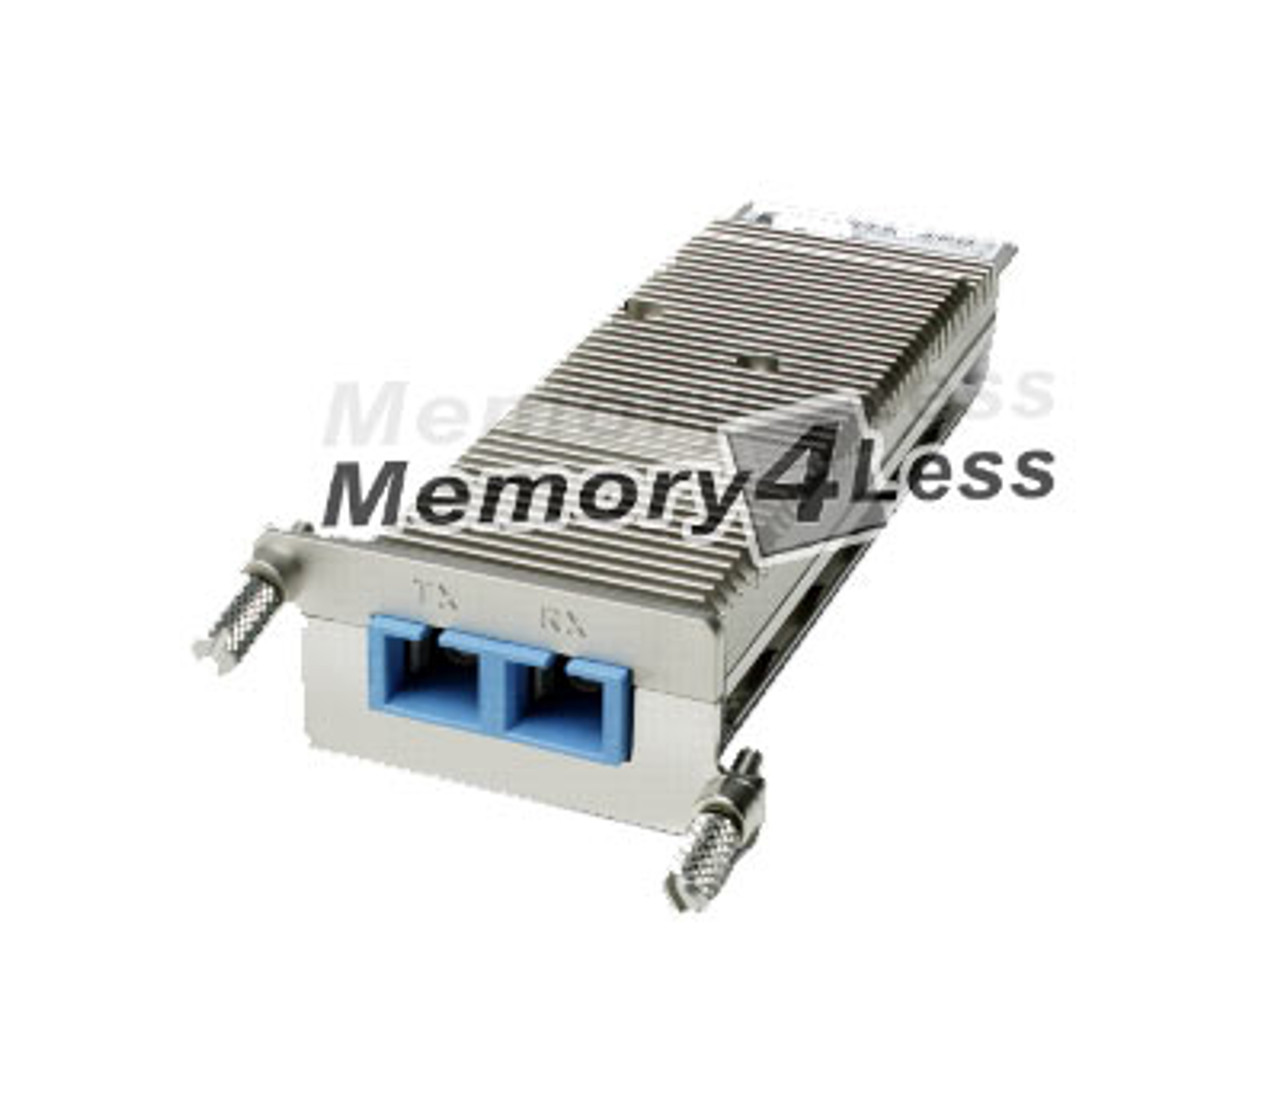 XENPAK-10GB-LX4-DDO Cisco 10Gbps 10GBase-LX4 Multi-mode Fiber 300m 1310nm Duplex SC Connector XENPAK Transceiver Module (Refurbished)